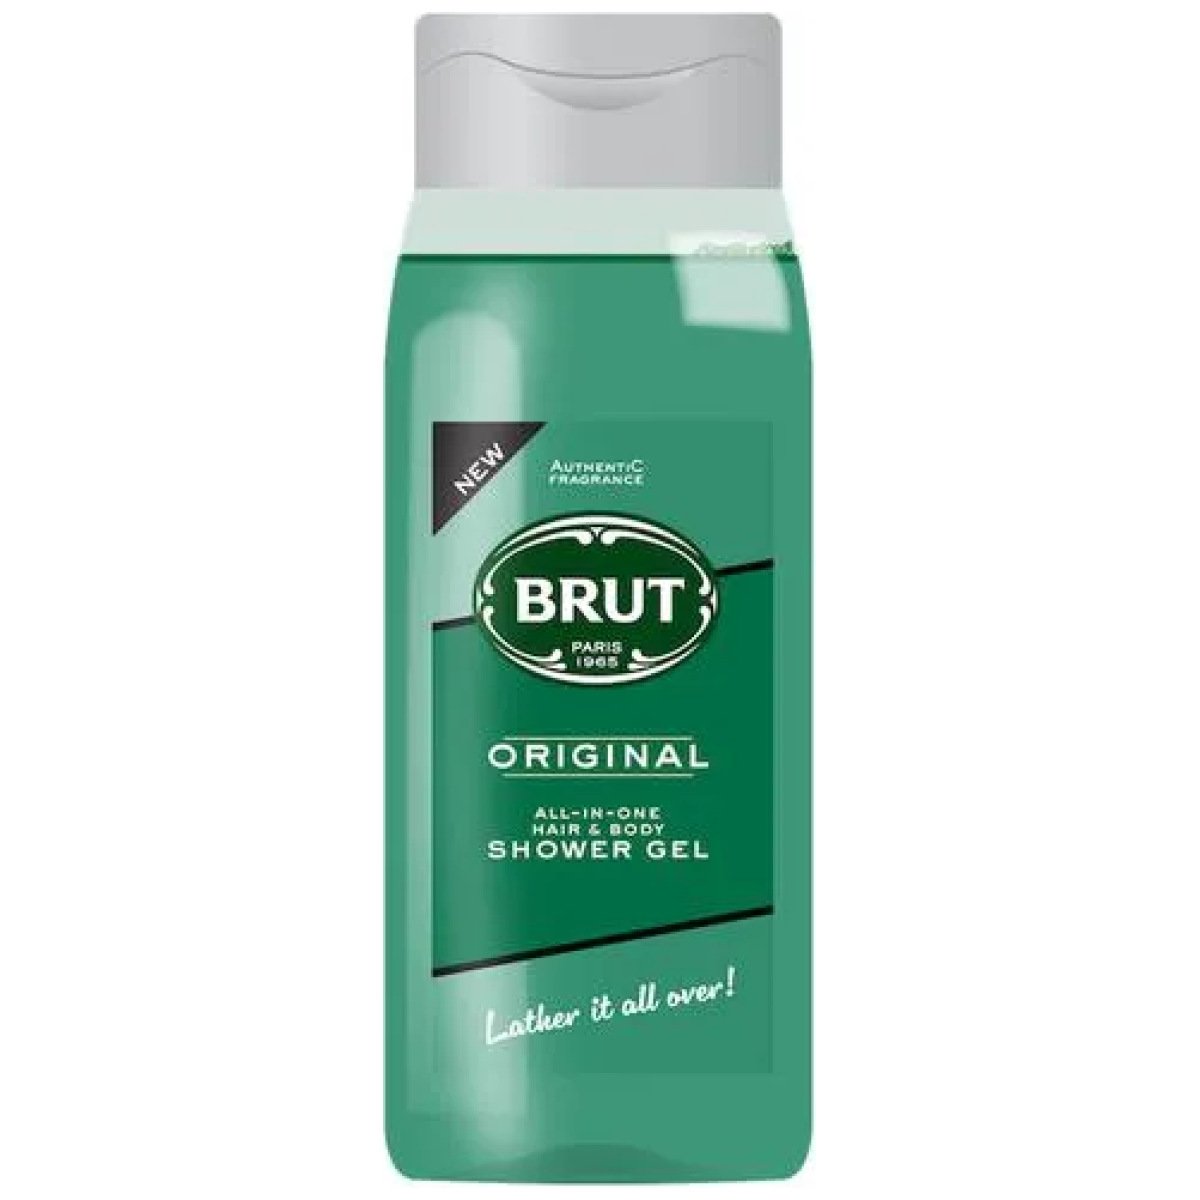 Brut Original All In One Hair & Body Shower Gel For Men 500ml